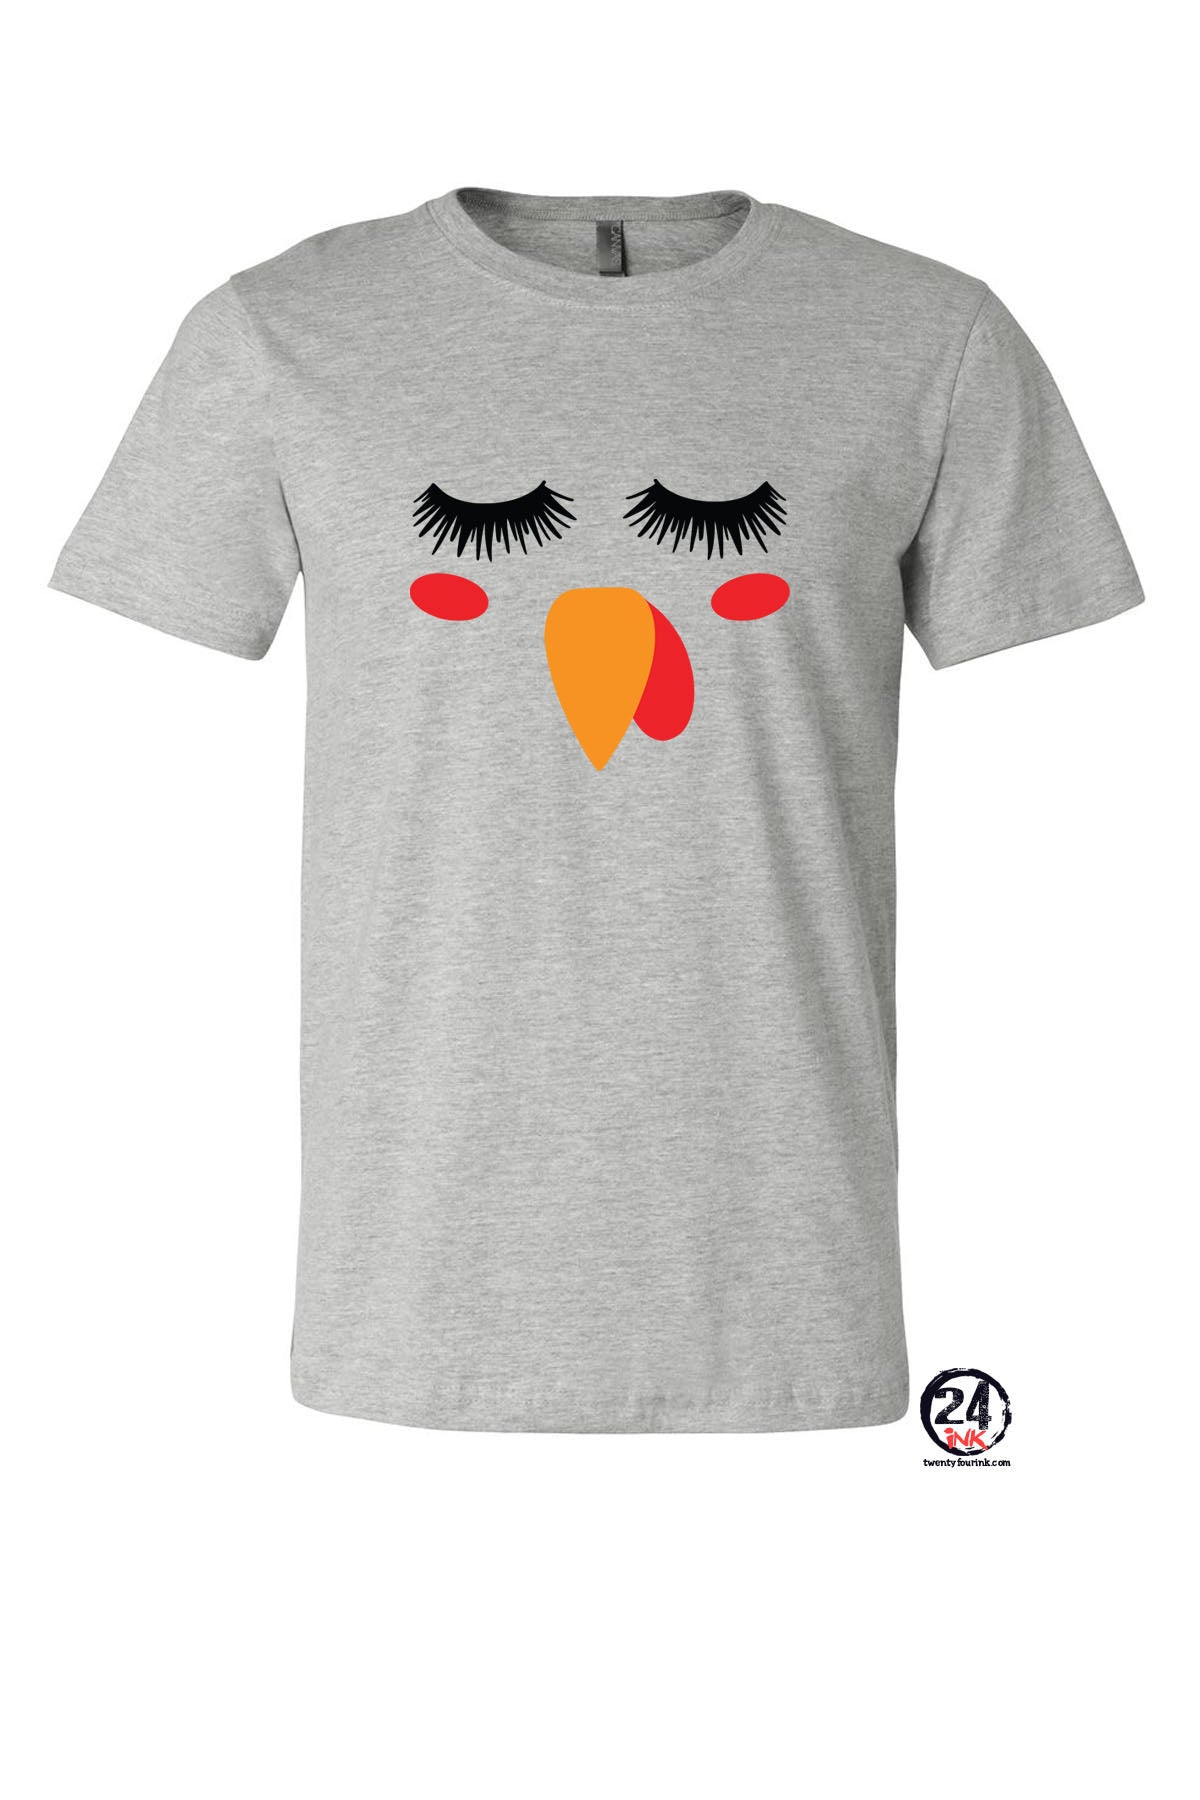 Turkey Face T-Shirt Design 9